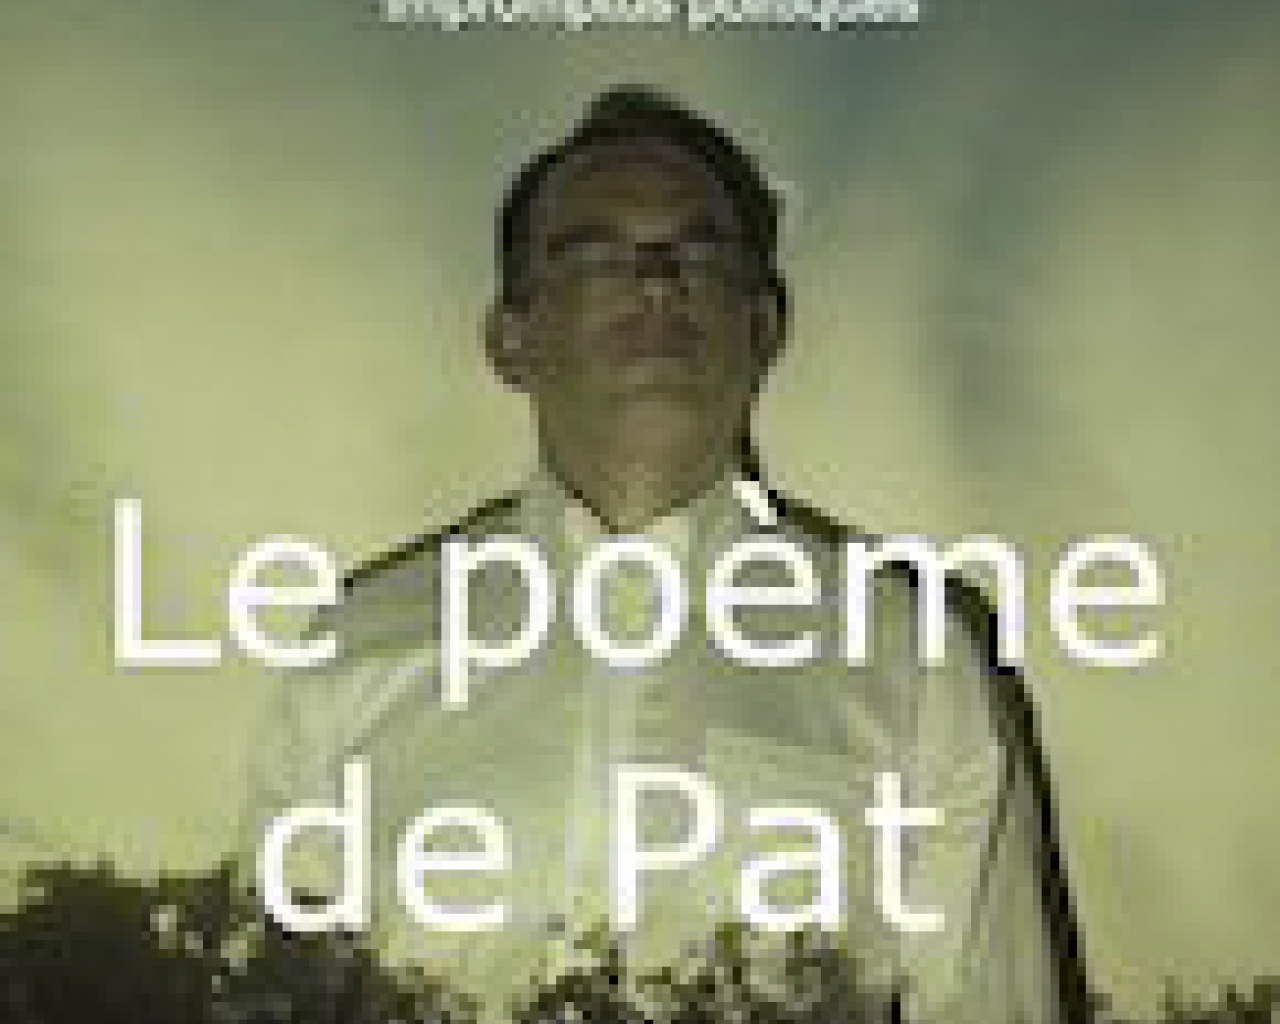 Le poème de Pat (impromptus politiques)